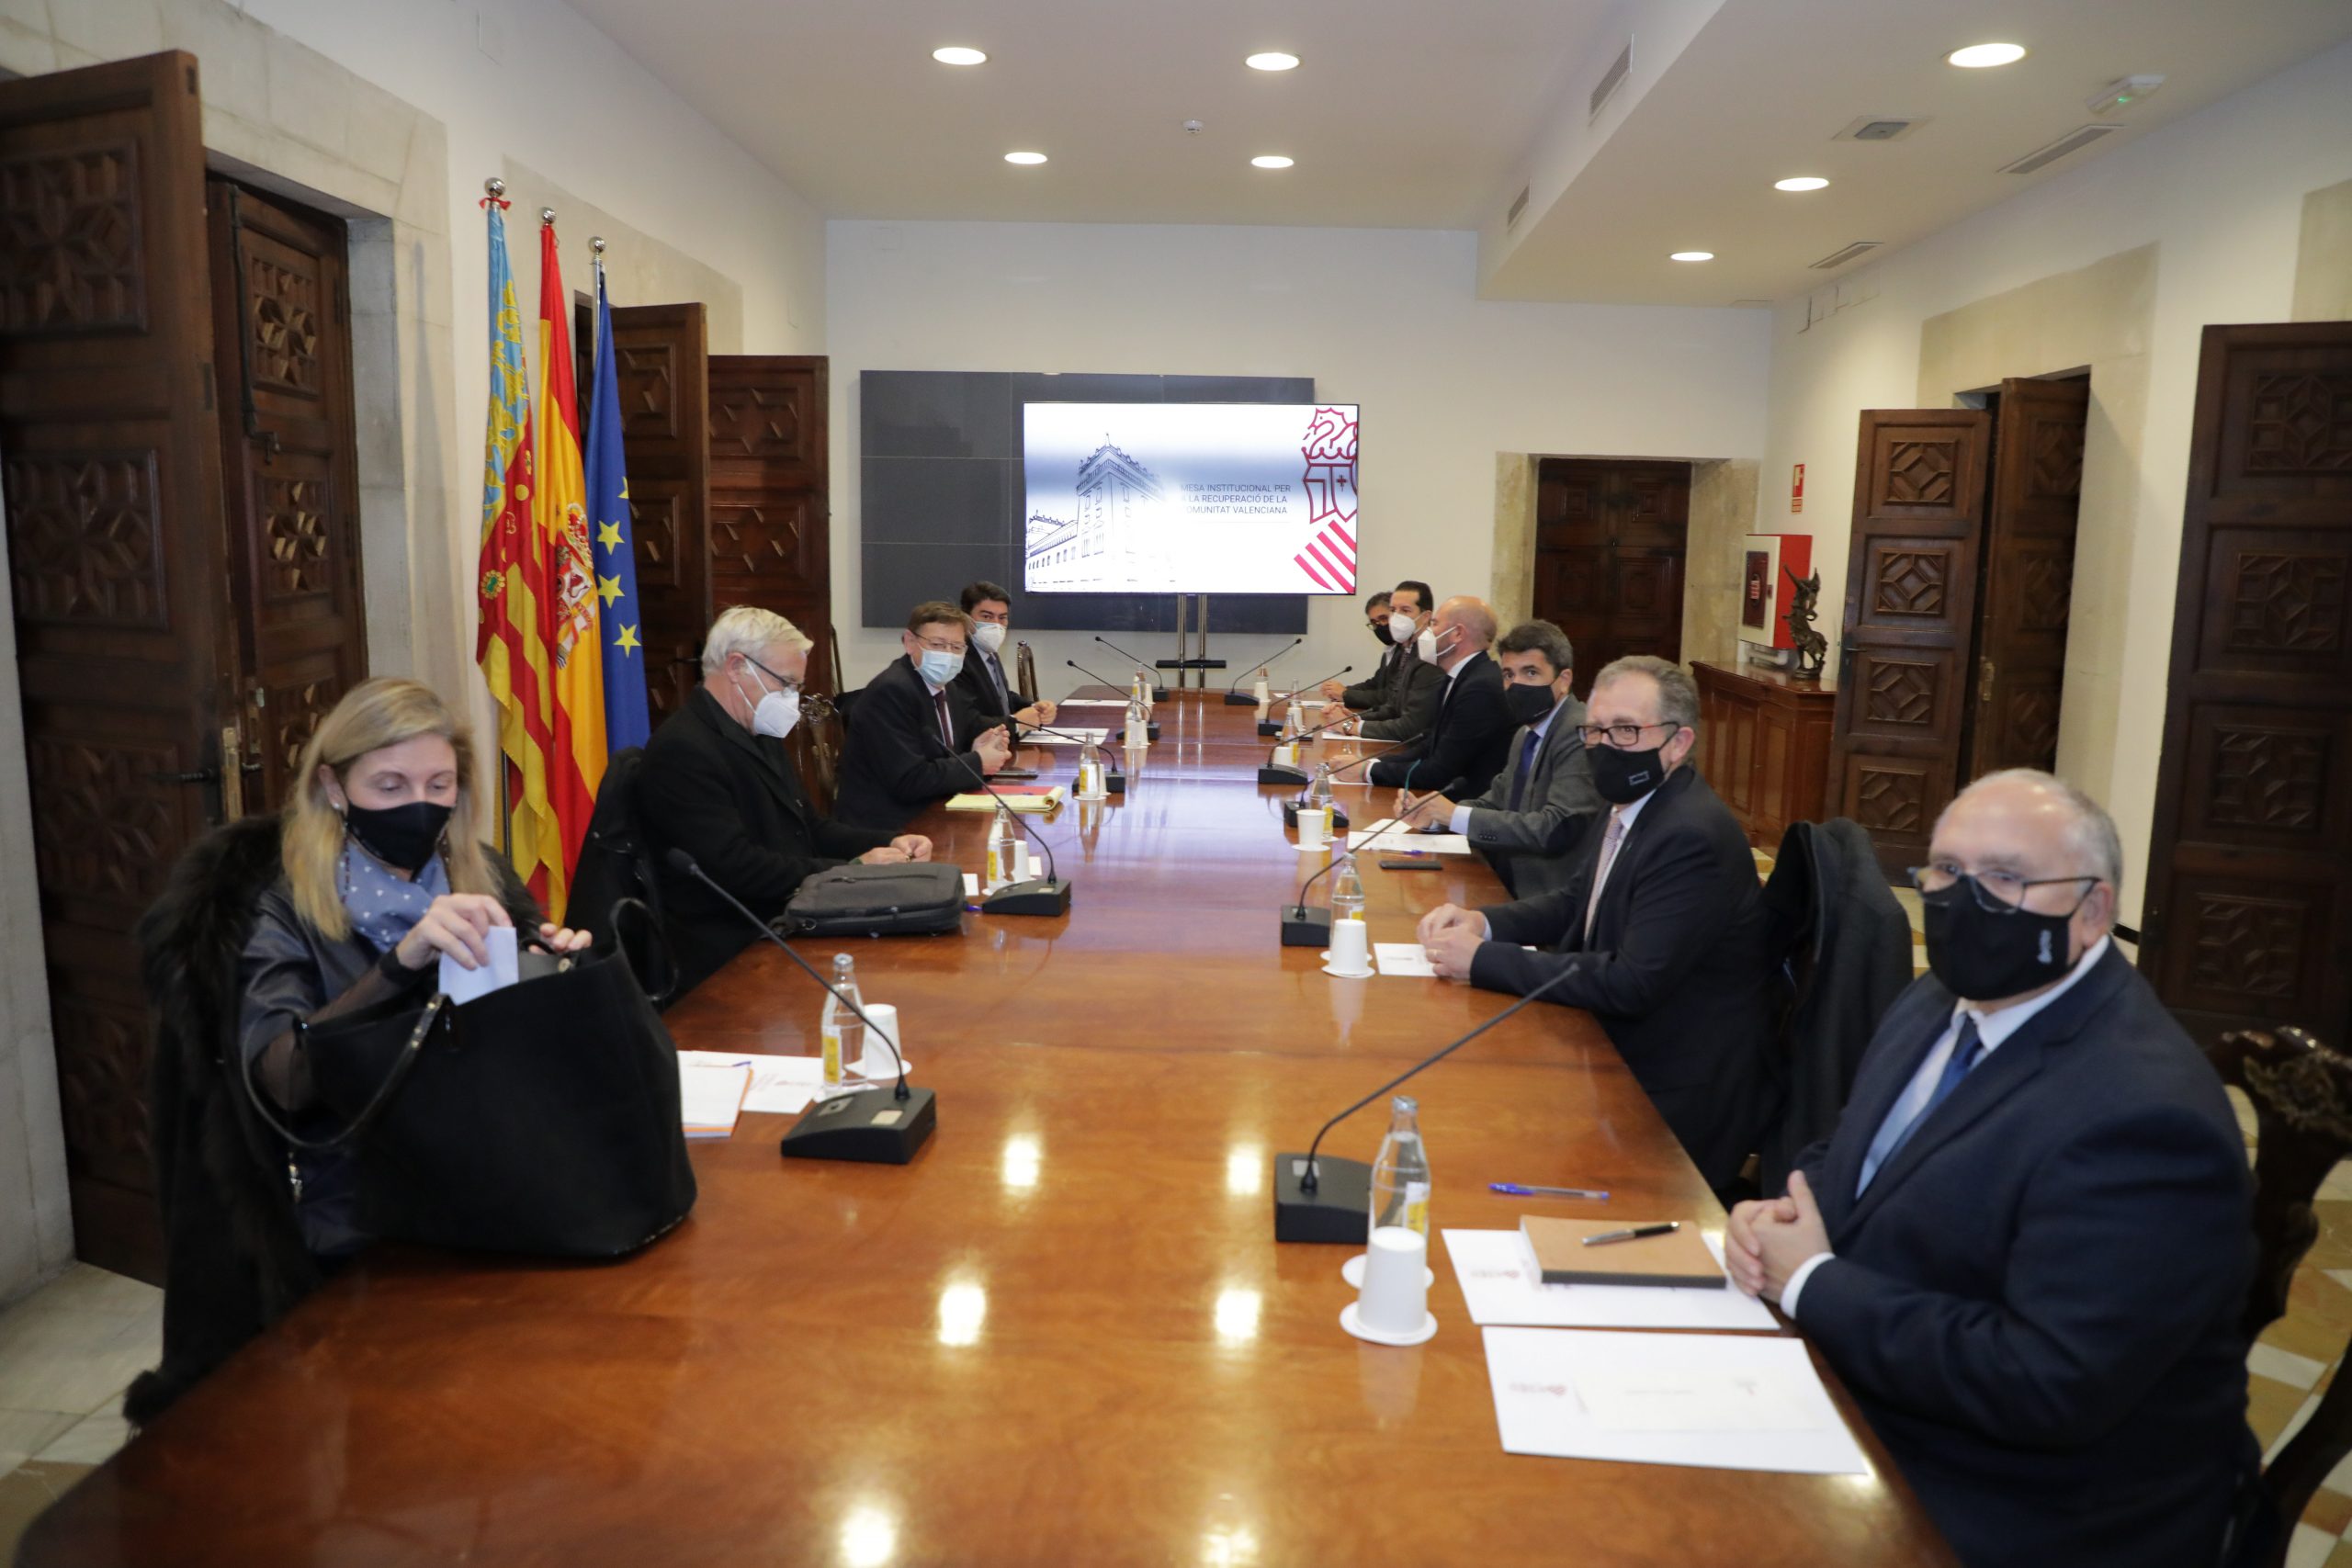 La Diputación de Castellón participará en el Fondo de Cooperación COVID-19 para ayudar pequeñas empresas y autónomos de la provincia afectados por la pandemia